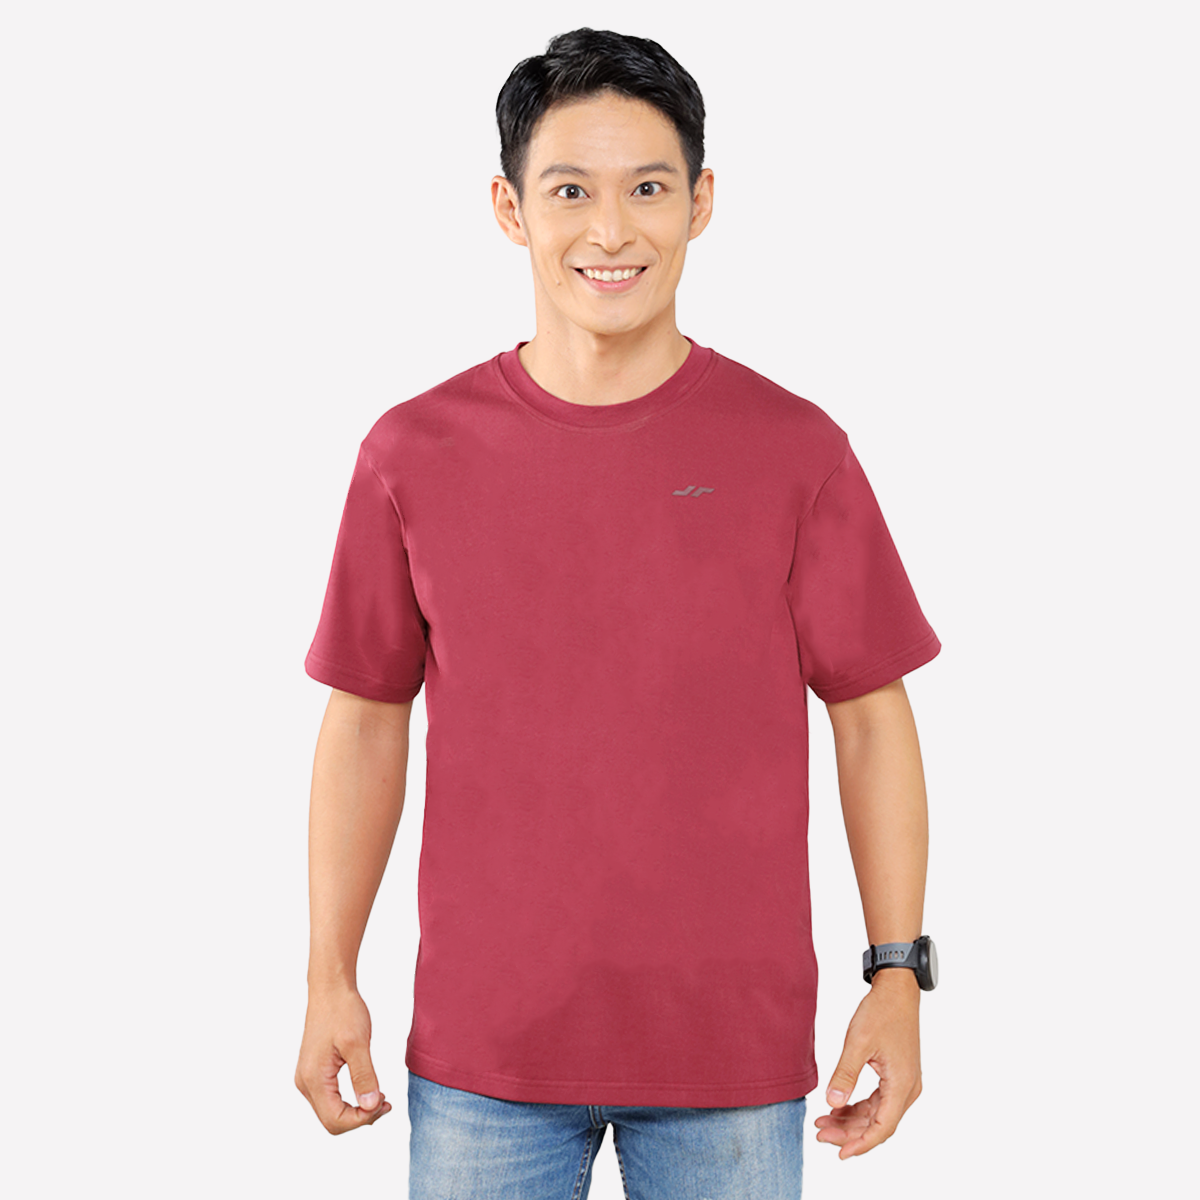 Juaraga T-Shirt - Pria JR Essential Tee - Merah Maroon